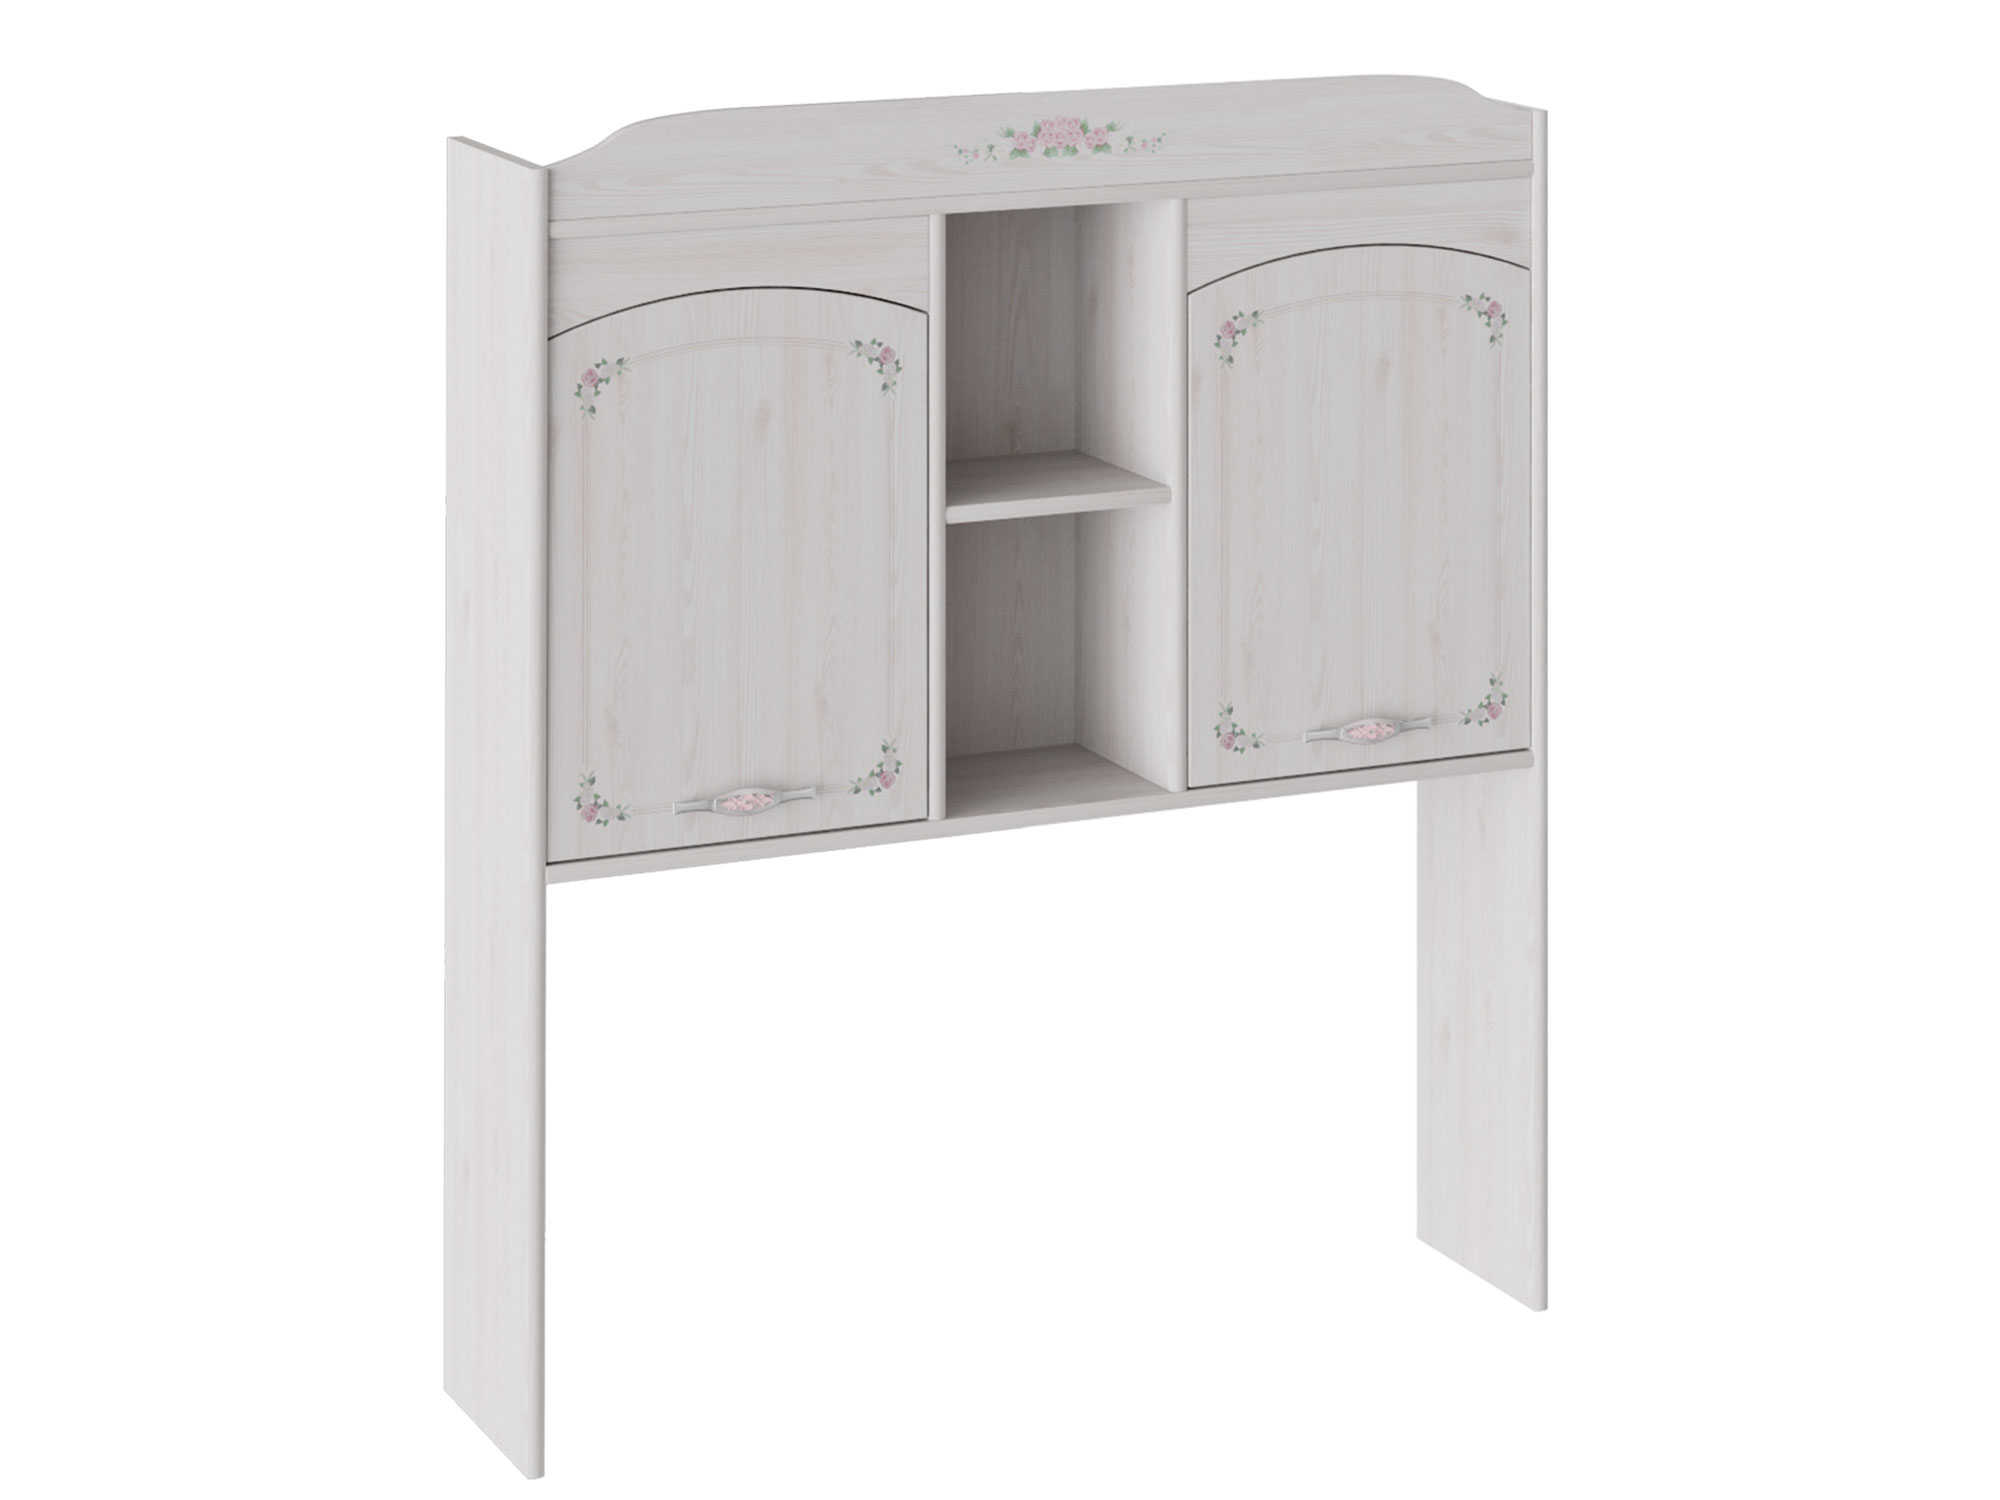 Шкаф настольный Ариэль Лиственница сибиу с рисунком, Белый, ЛДСП шкаф комбинированный принцесса лиственница сибиу лдсп